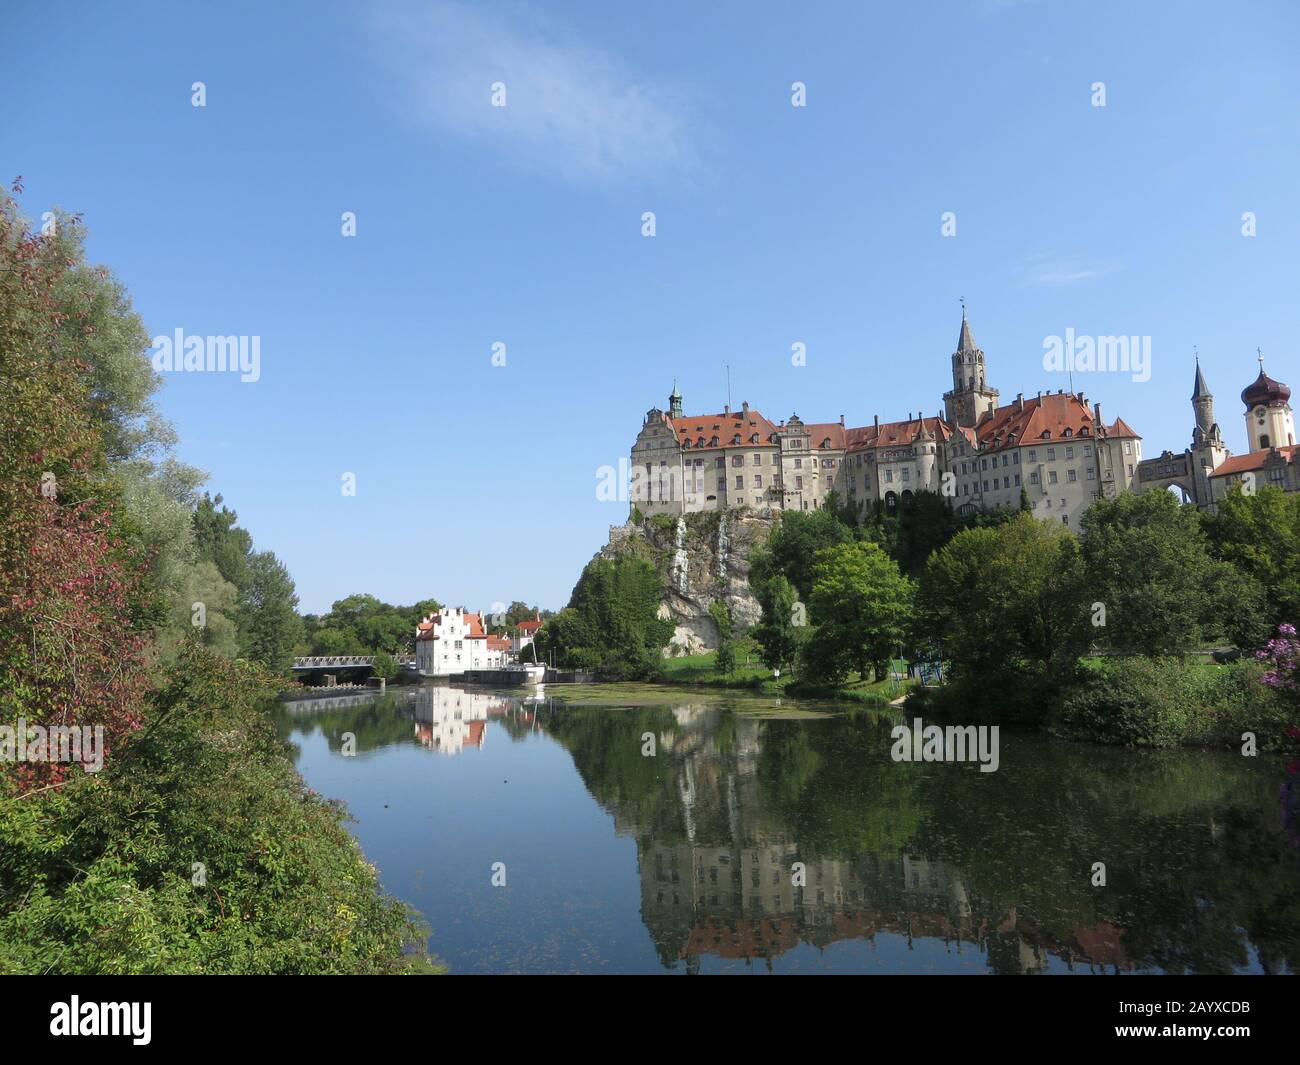 Sigmaringen, Allemagne : le château de Sigmaringen est l'un des châteaux les plus célèbres d'Allemagne Banque D'Images